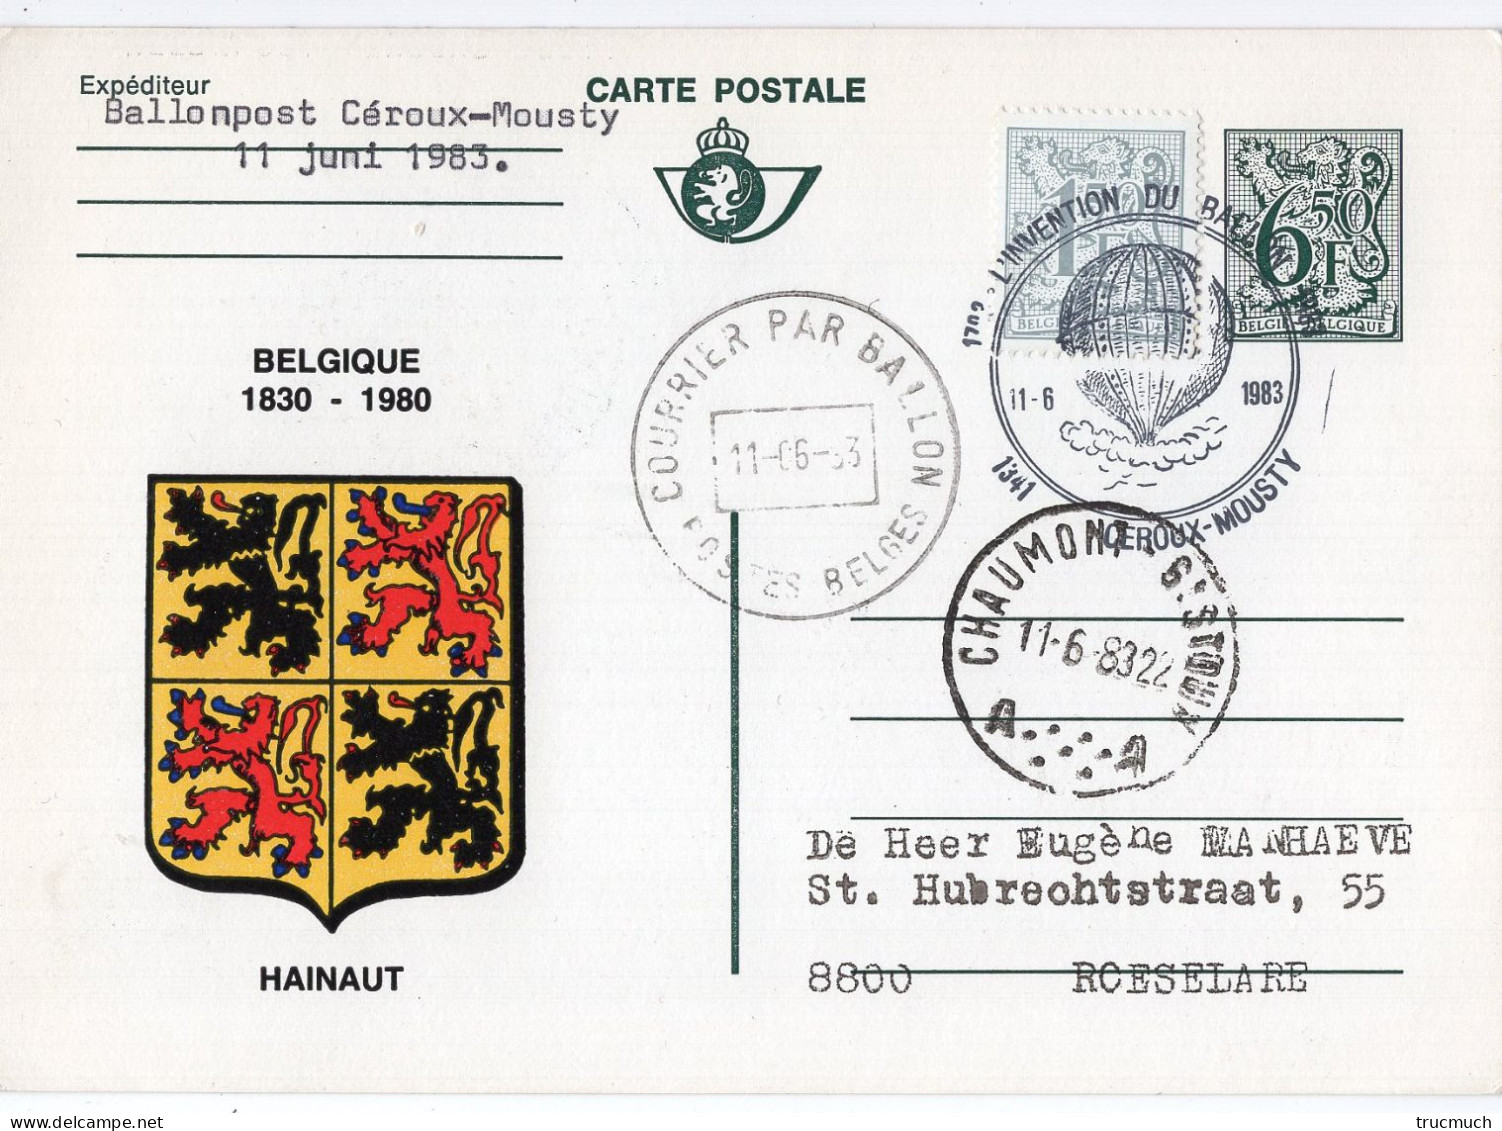 PHILATELIE - Carte Postale - Courrier Par Ballon - Armoiries HAINAUT - CEROUX-MOUSTY - Gebraucht